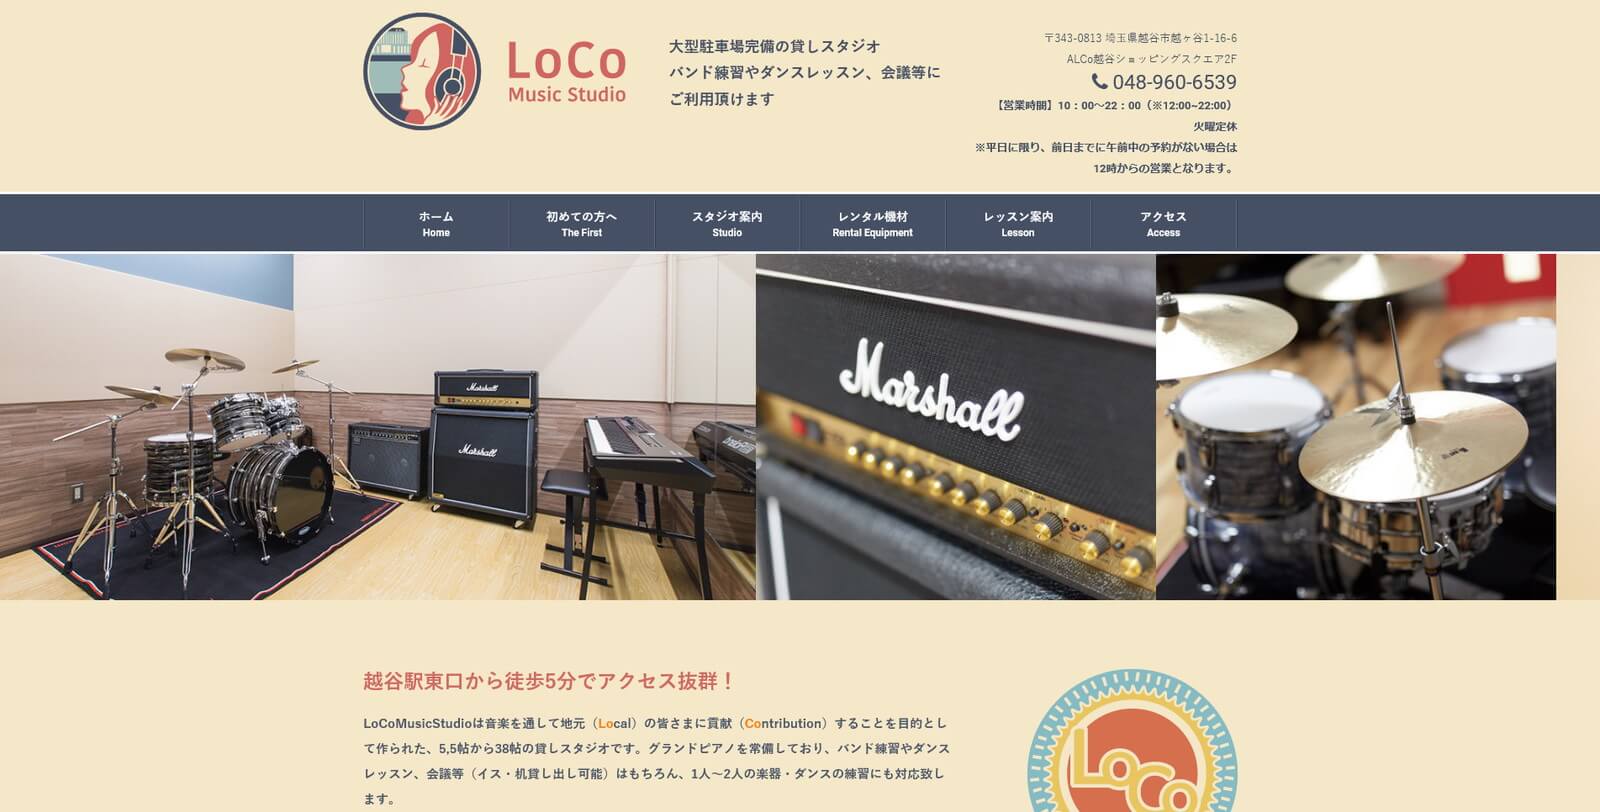  LoCo Music Studio 